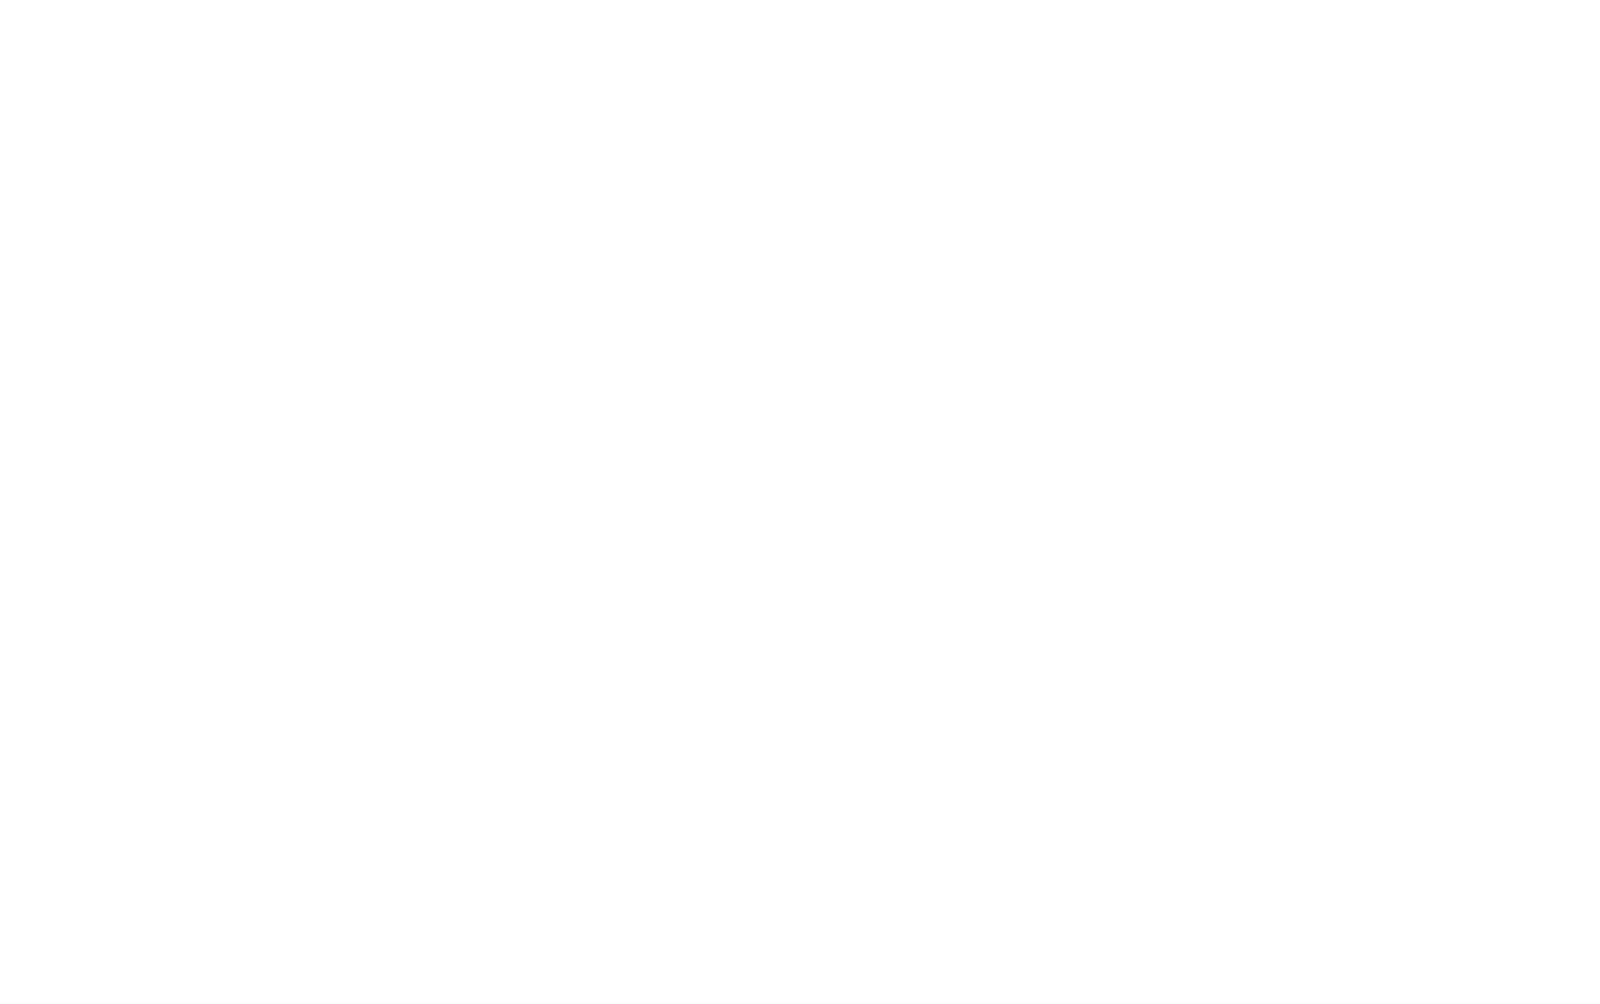 Logodol 全てが高画質 背景透過なアーティストのロゴをお届けするブログ 高画質 透過 Exile The Second のロゴをダークヒーロー風にして再現